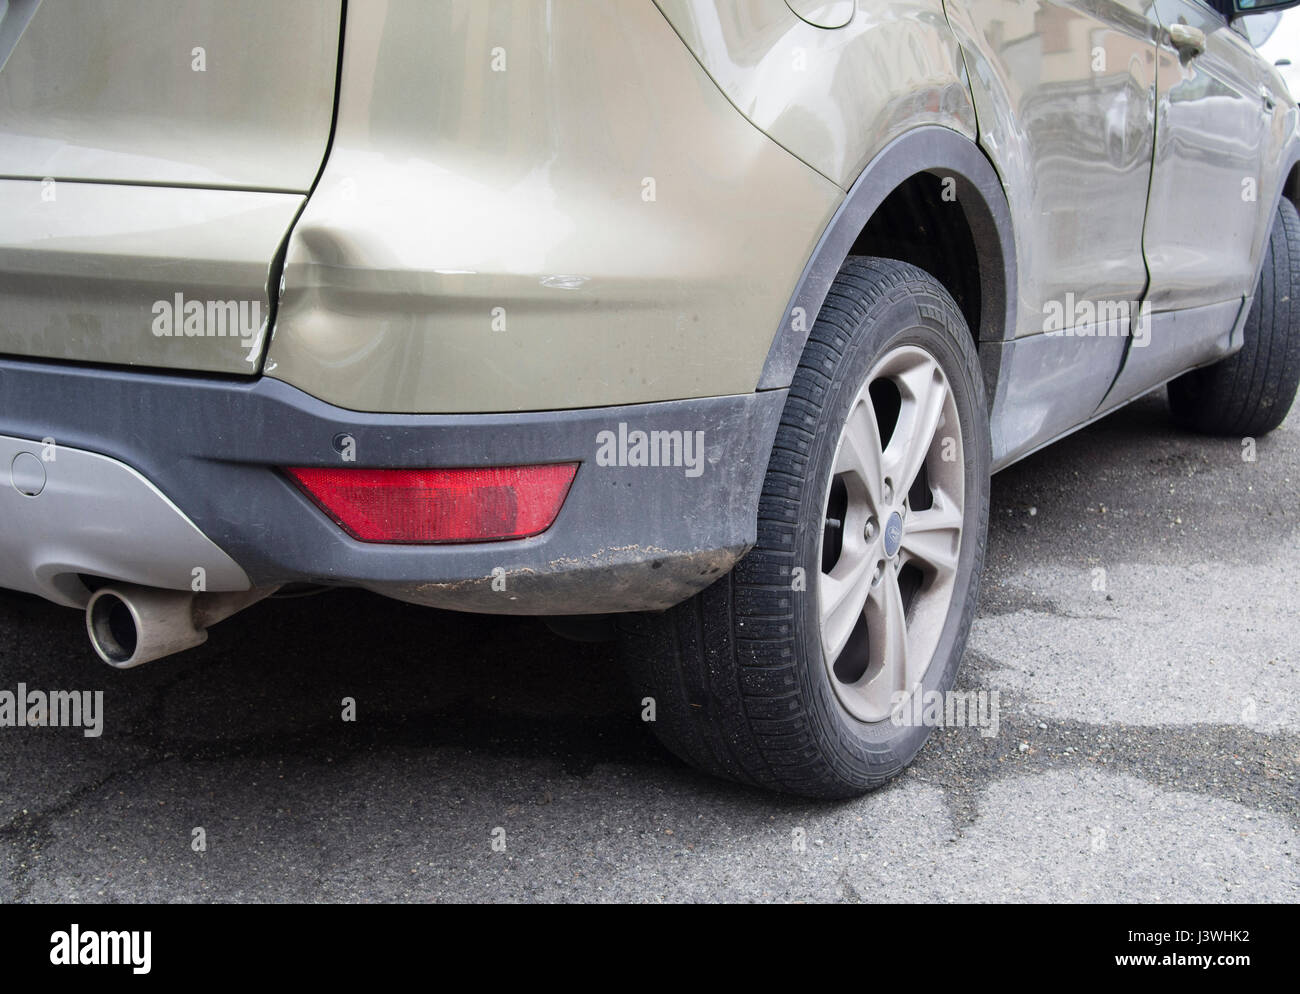 Détail endommagé d'une voiture garée avariées , Gingembre vert Ford Kuga / Escape 2013 modèle impliqués Banque D'Images